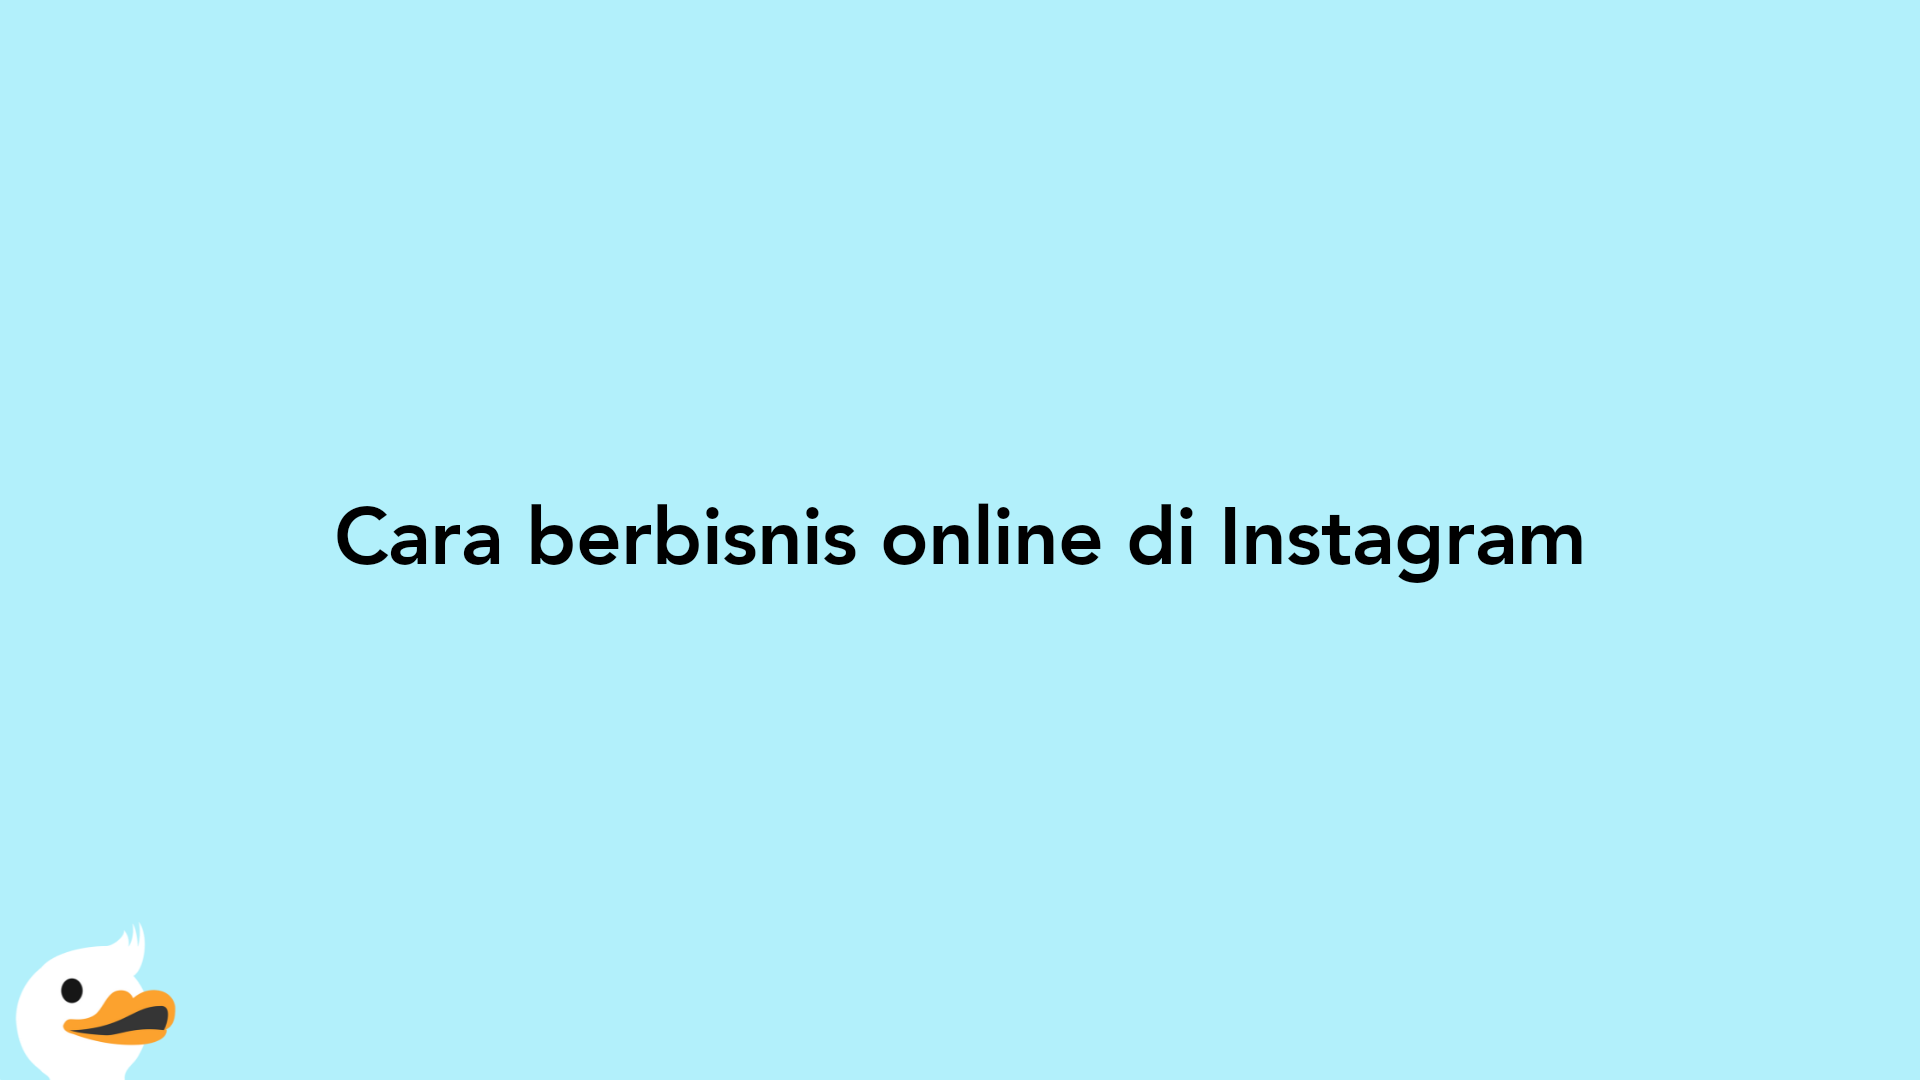 Cara berbisnis online di Instagram